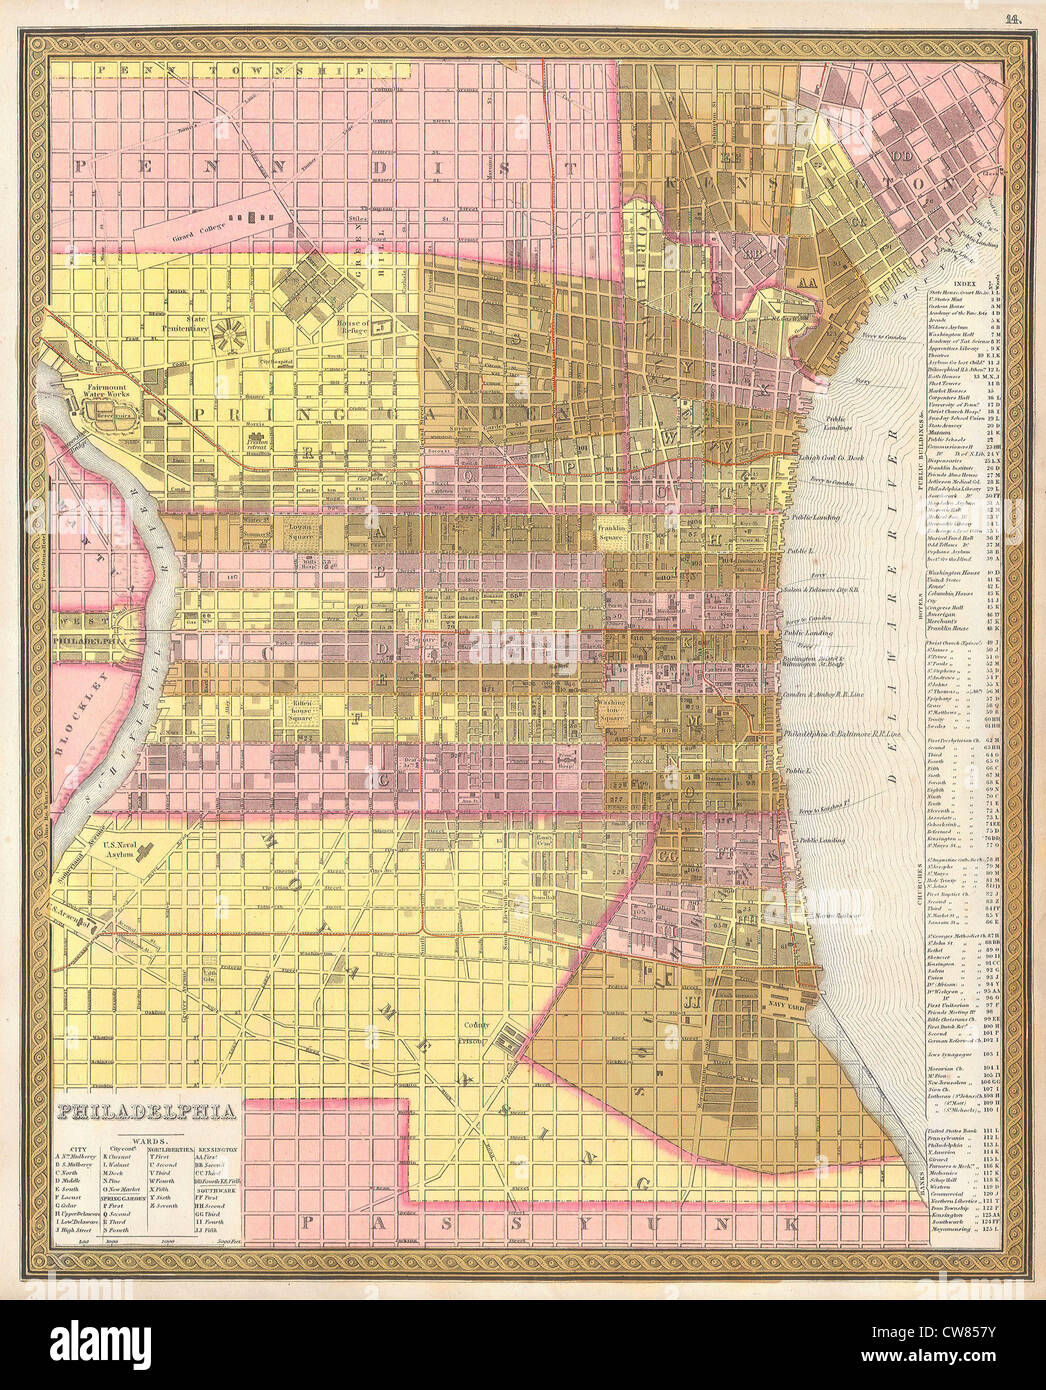 1846 Street Map or Plan of Philadelphia, Pennsylvania Stock Photo